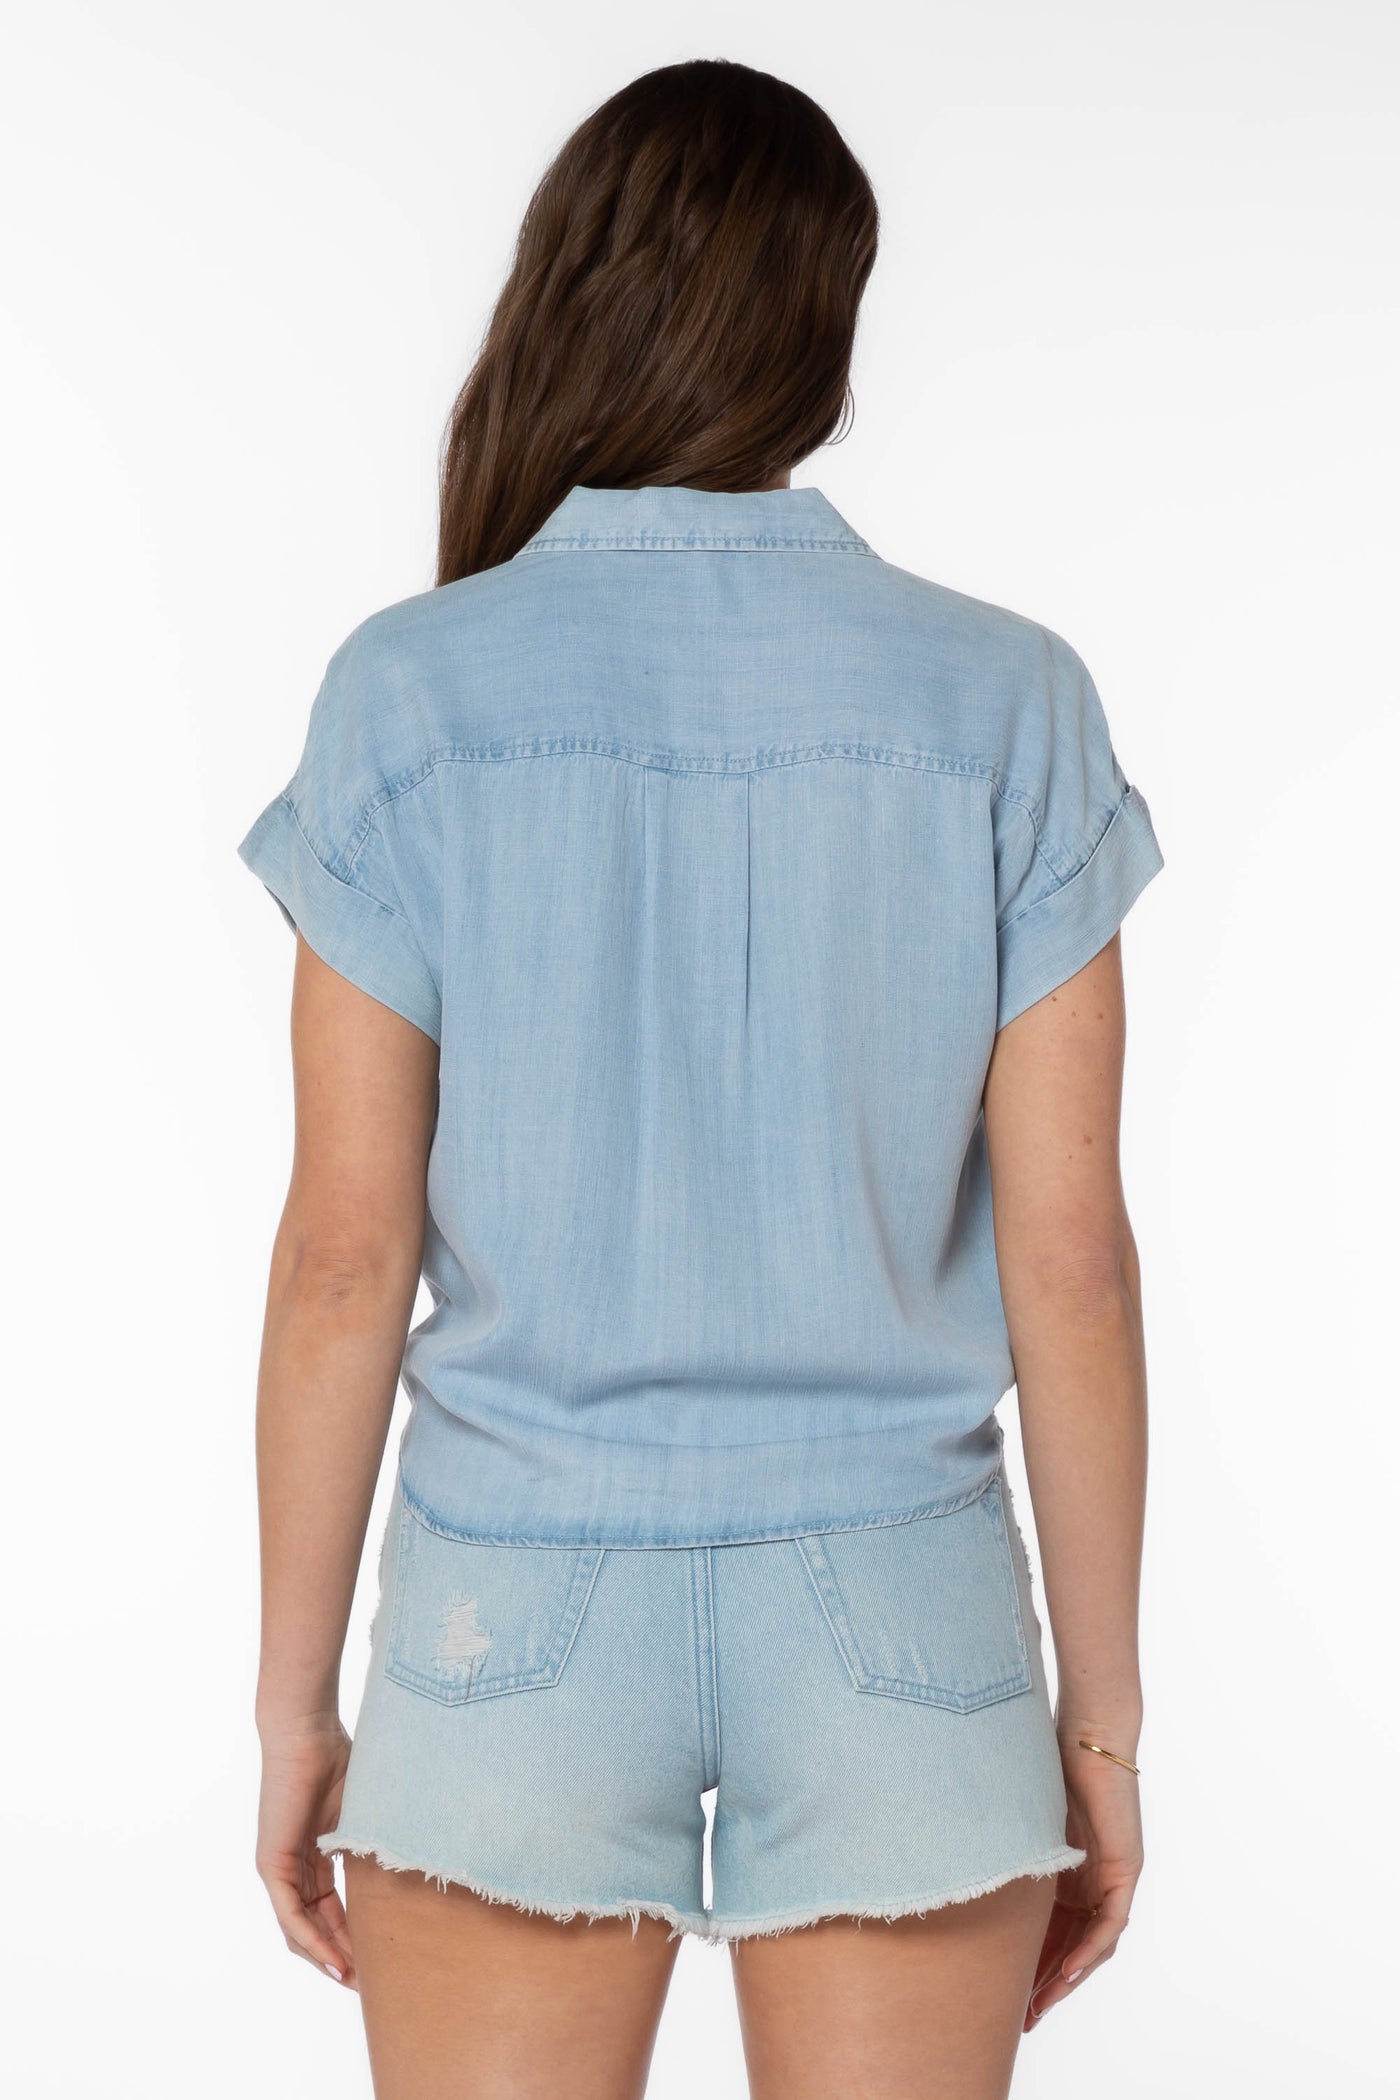 Zuria Blue Denim Shirt - Tops - Velvet Heart Clothing